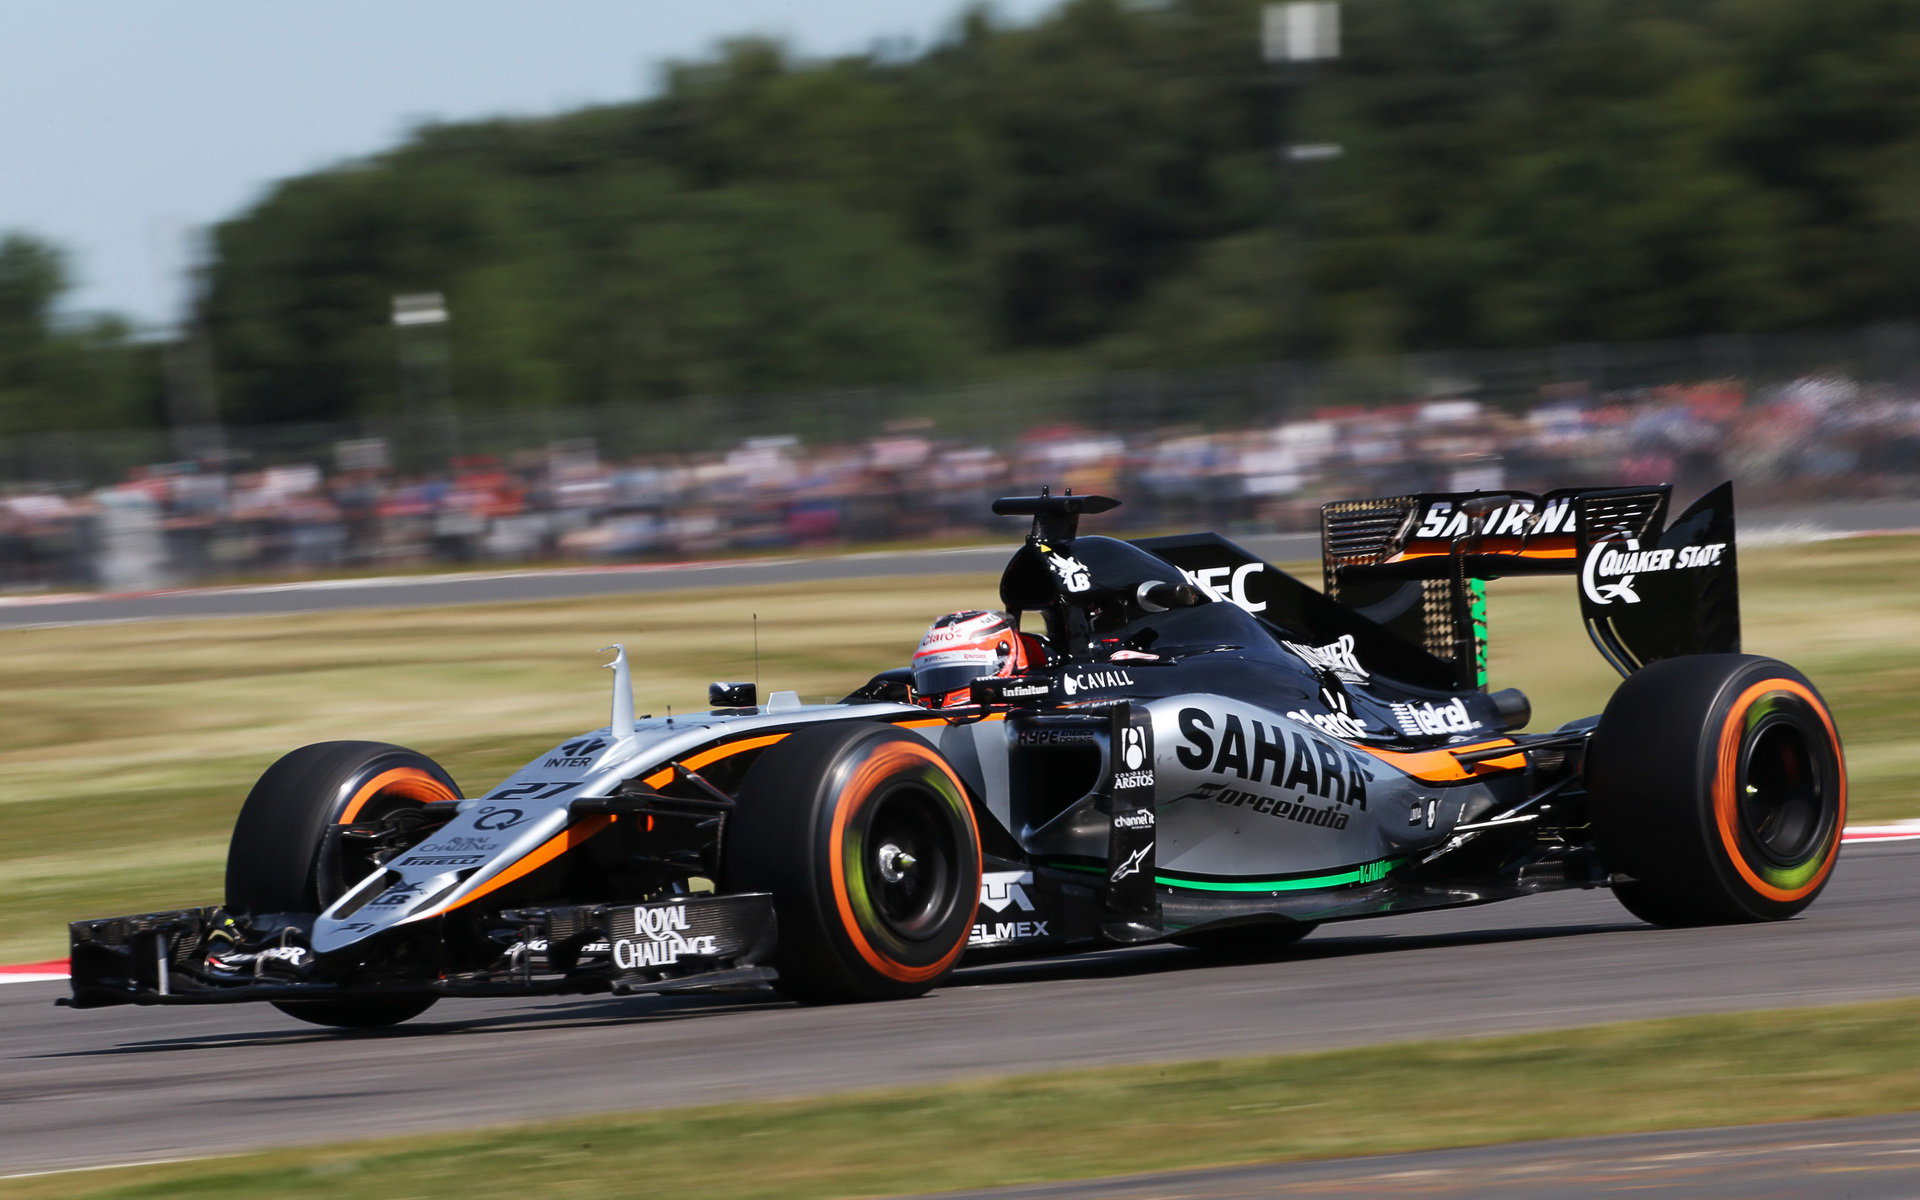 Zažívá Nico Hülkenberg u týmu Force India poslední sezonu? Možná ano!